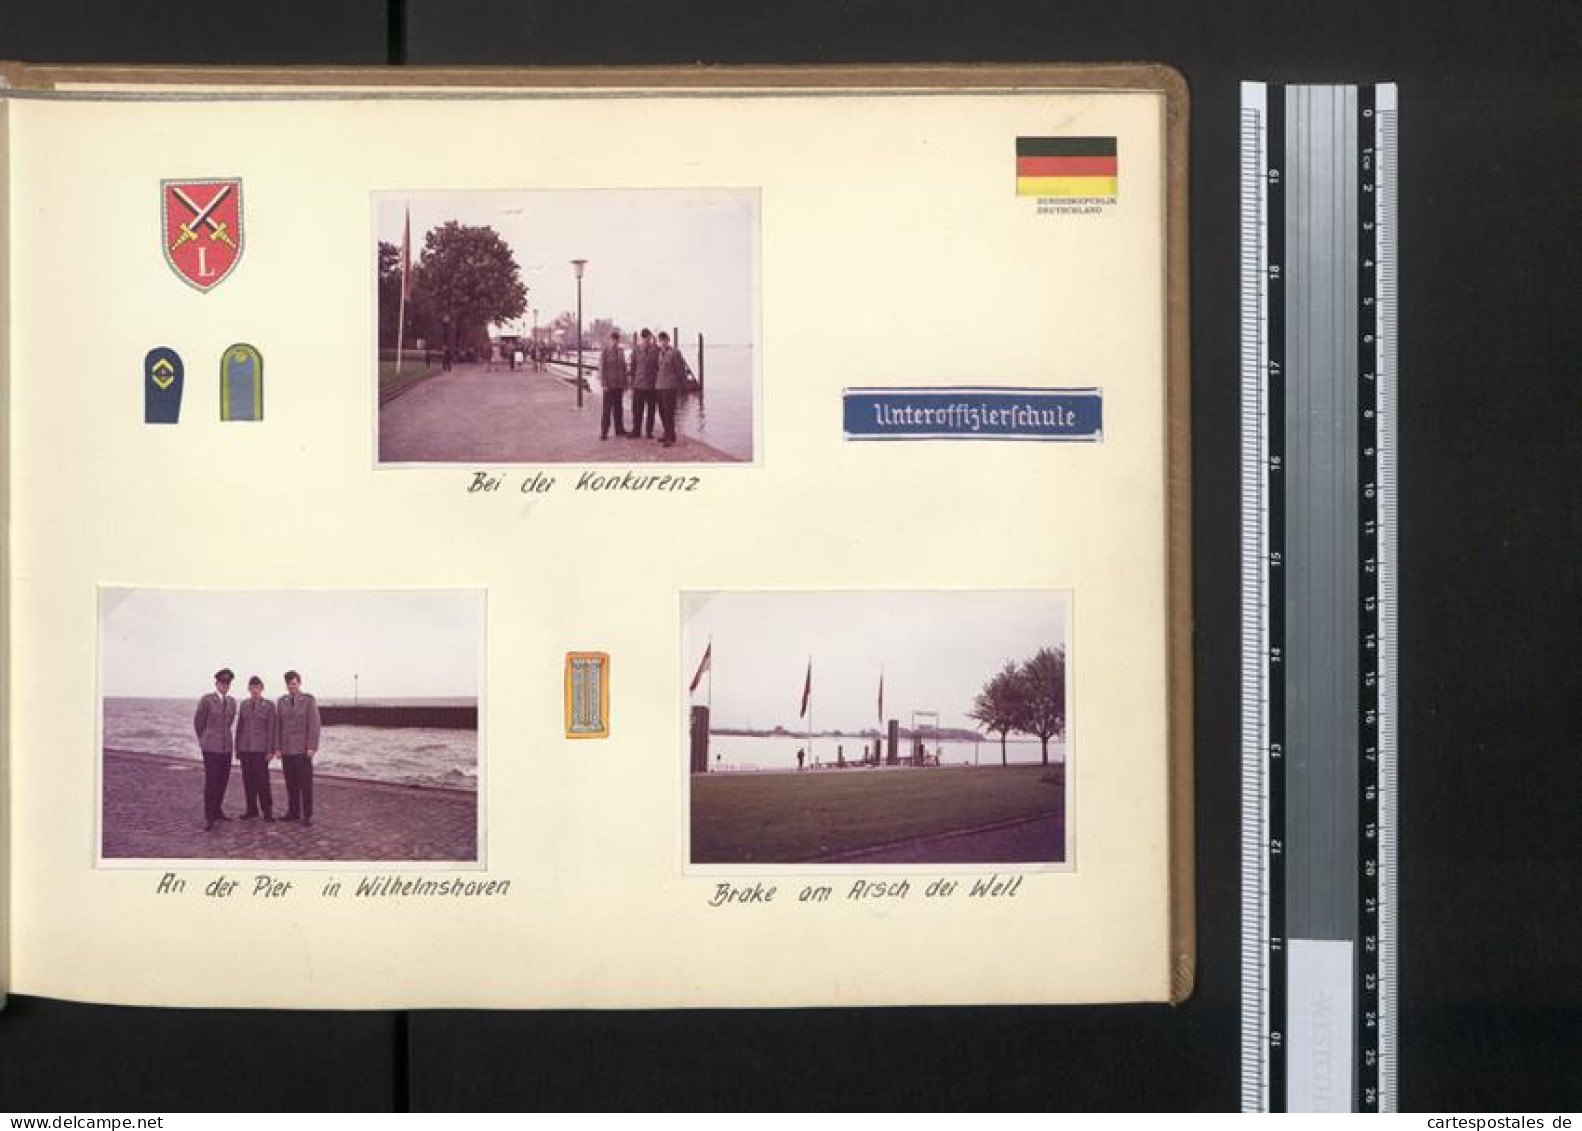 Fotoalbum Mit 67 Fotografien Bundeswehr, Grundausbildung 1969, Panzer, NATO, Jugendlager, Uniform  - Album & Collezioni